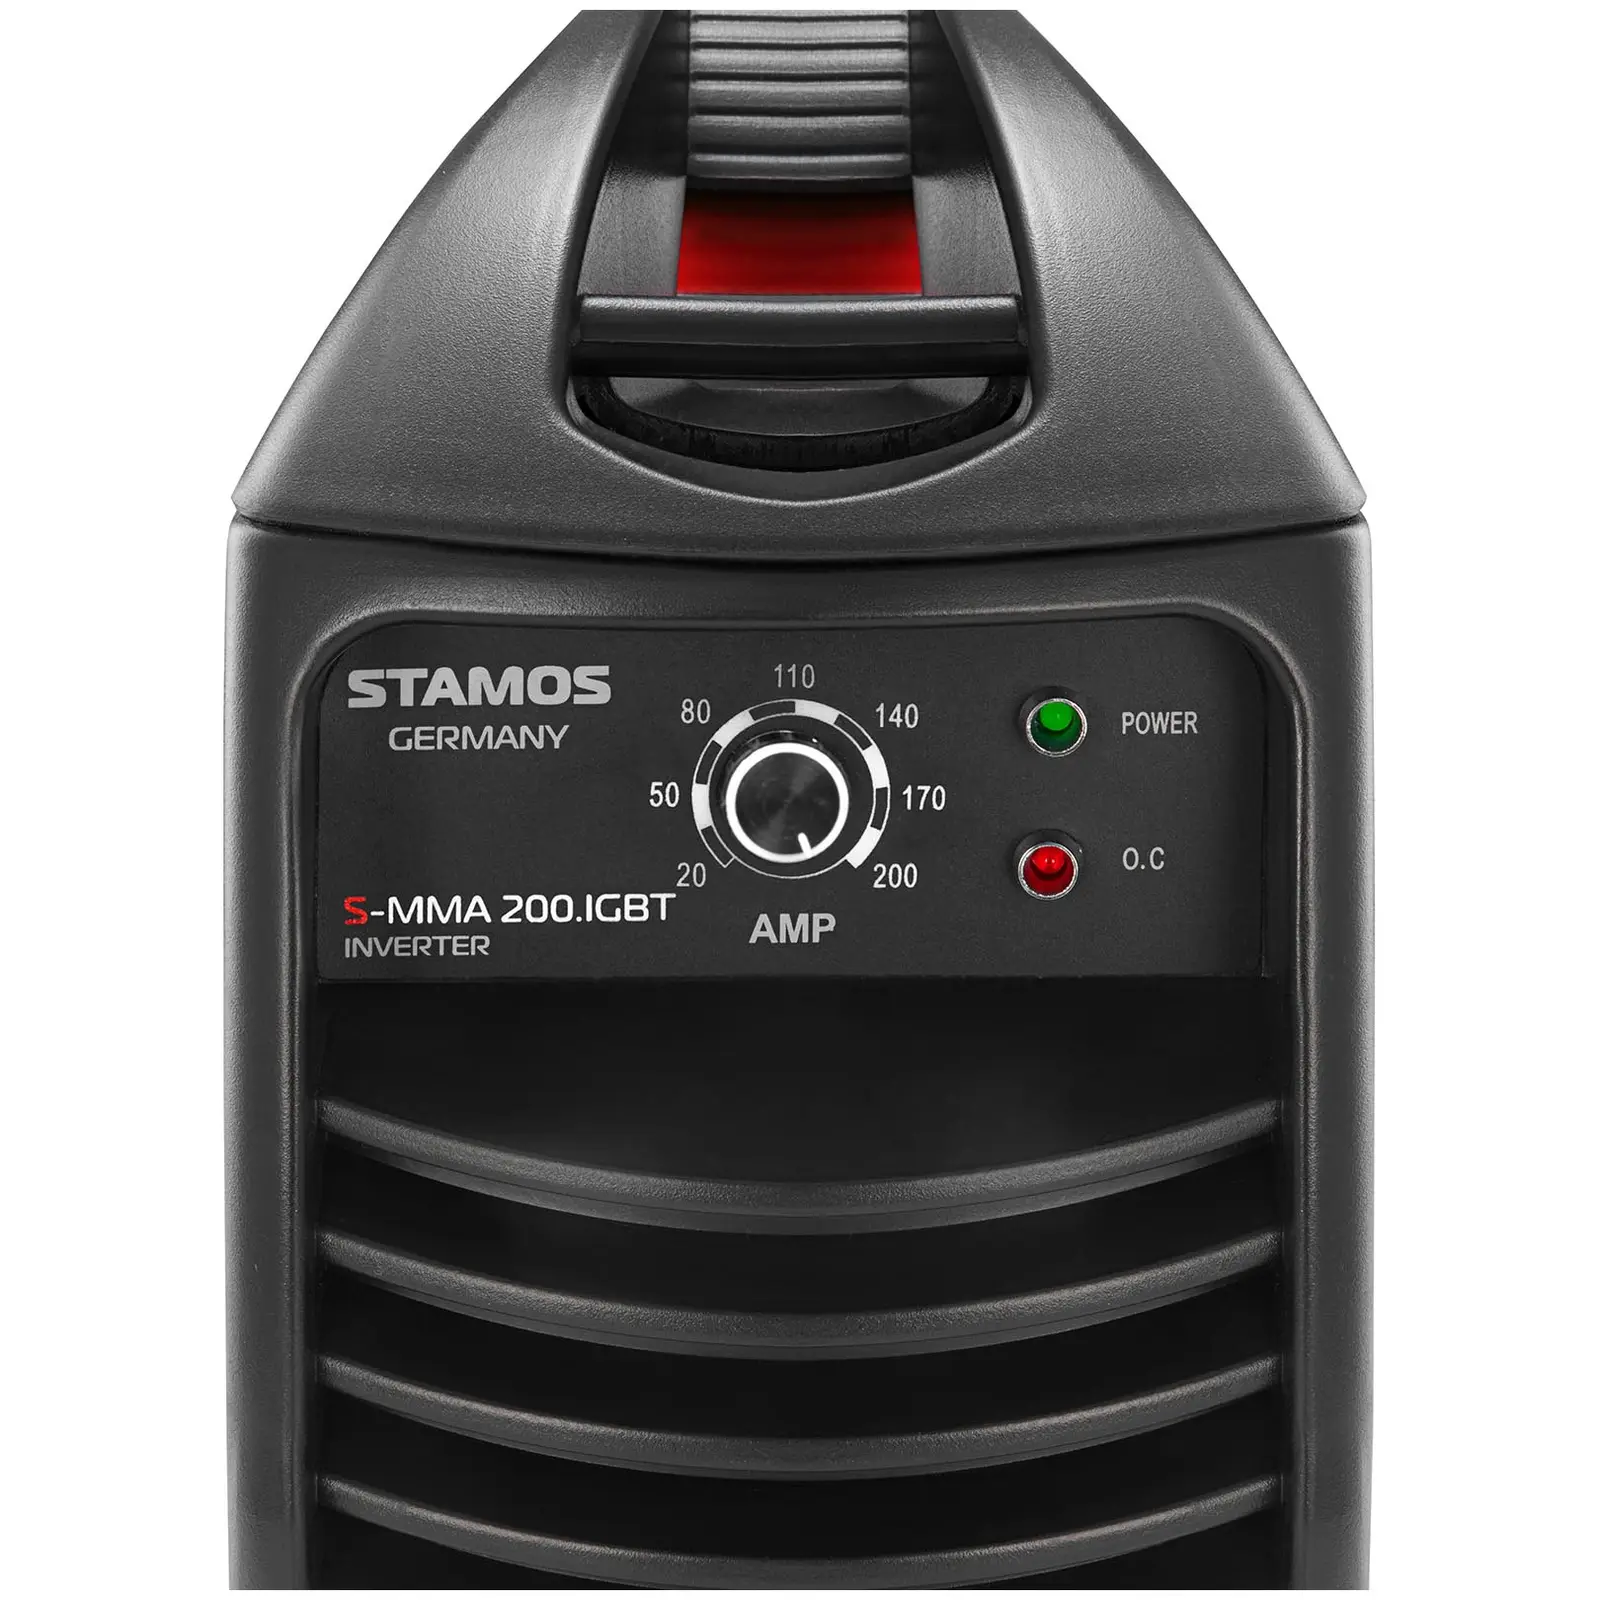 Svařovací set Elektrodová svářečka - 200 A - Hot Start - IGBT + Svářecí helma - Firestarter 500 - ADVANCED SERIES